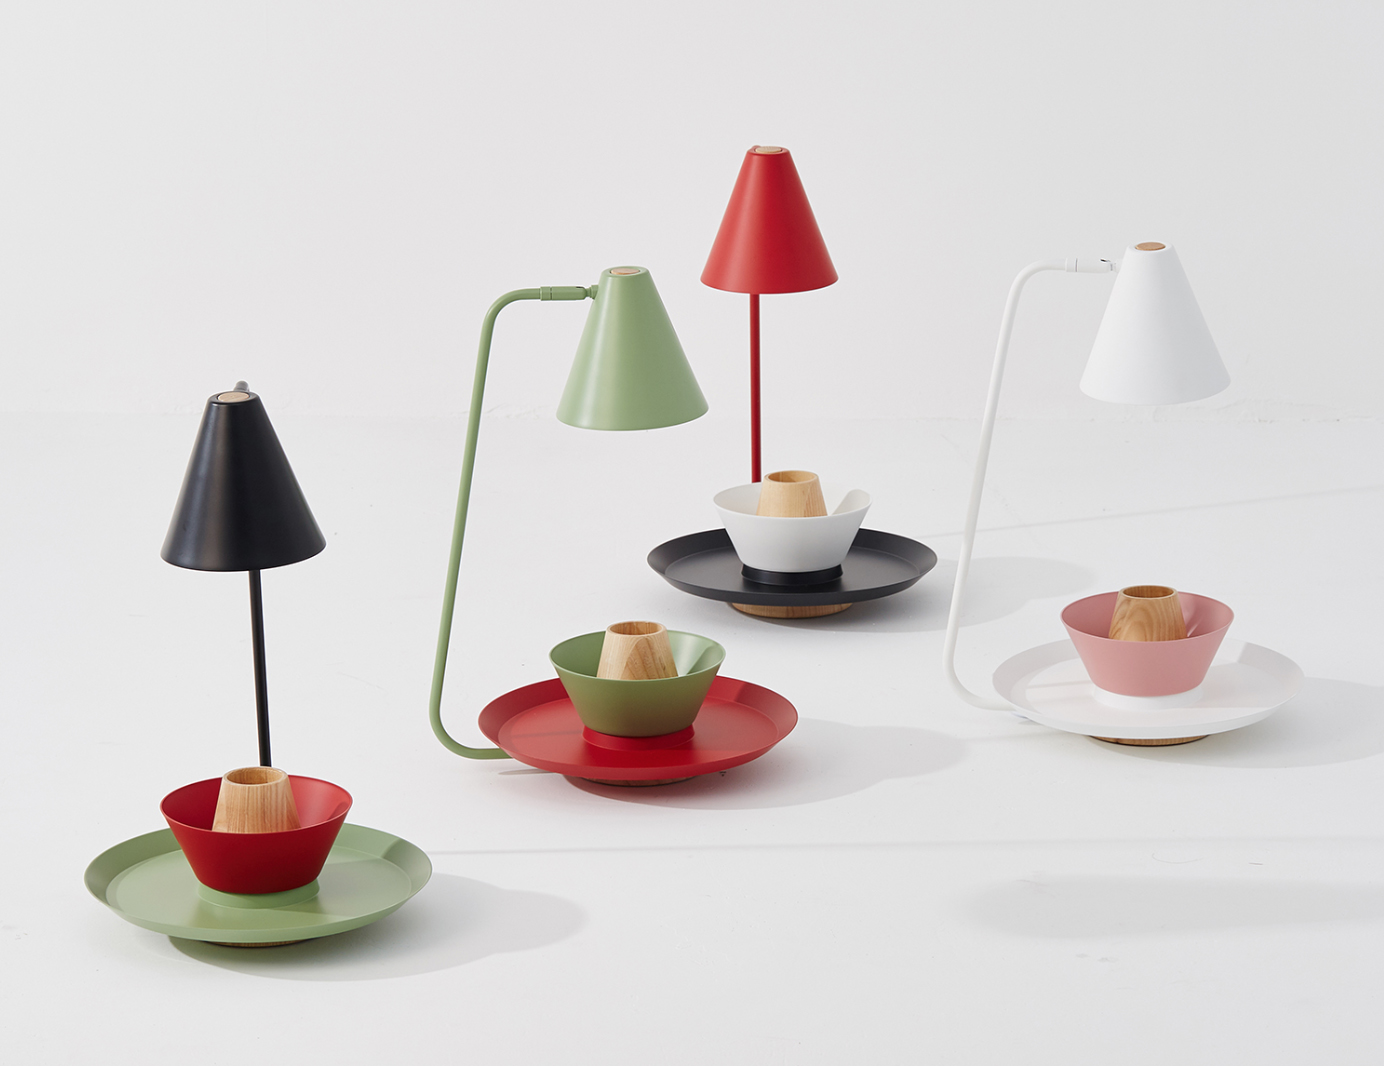 Table Lamp Conik. Minimal Scandinavian design made playful through modularity and color